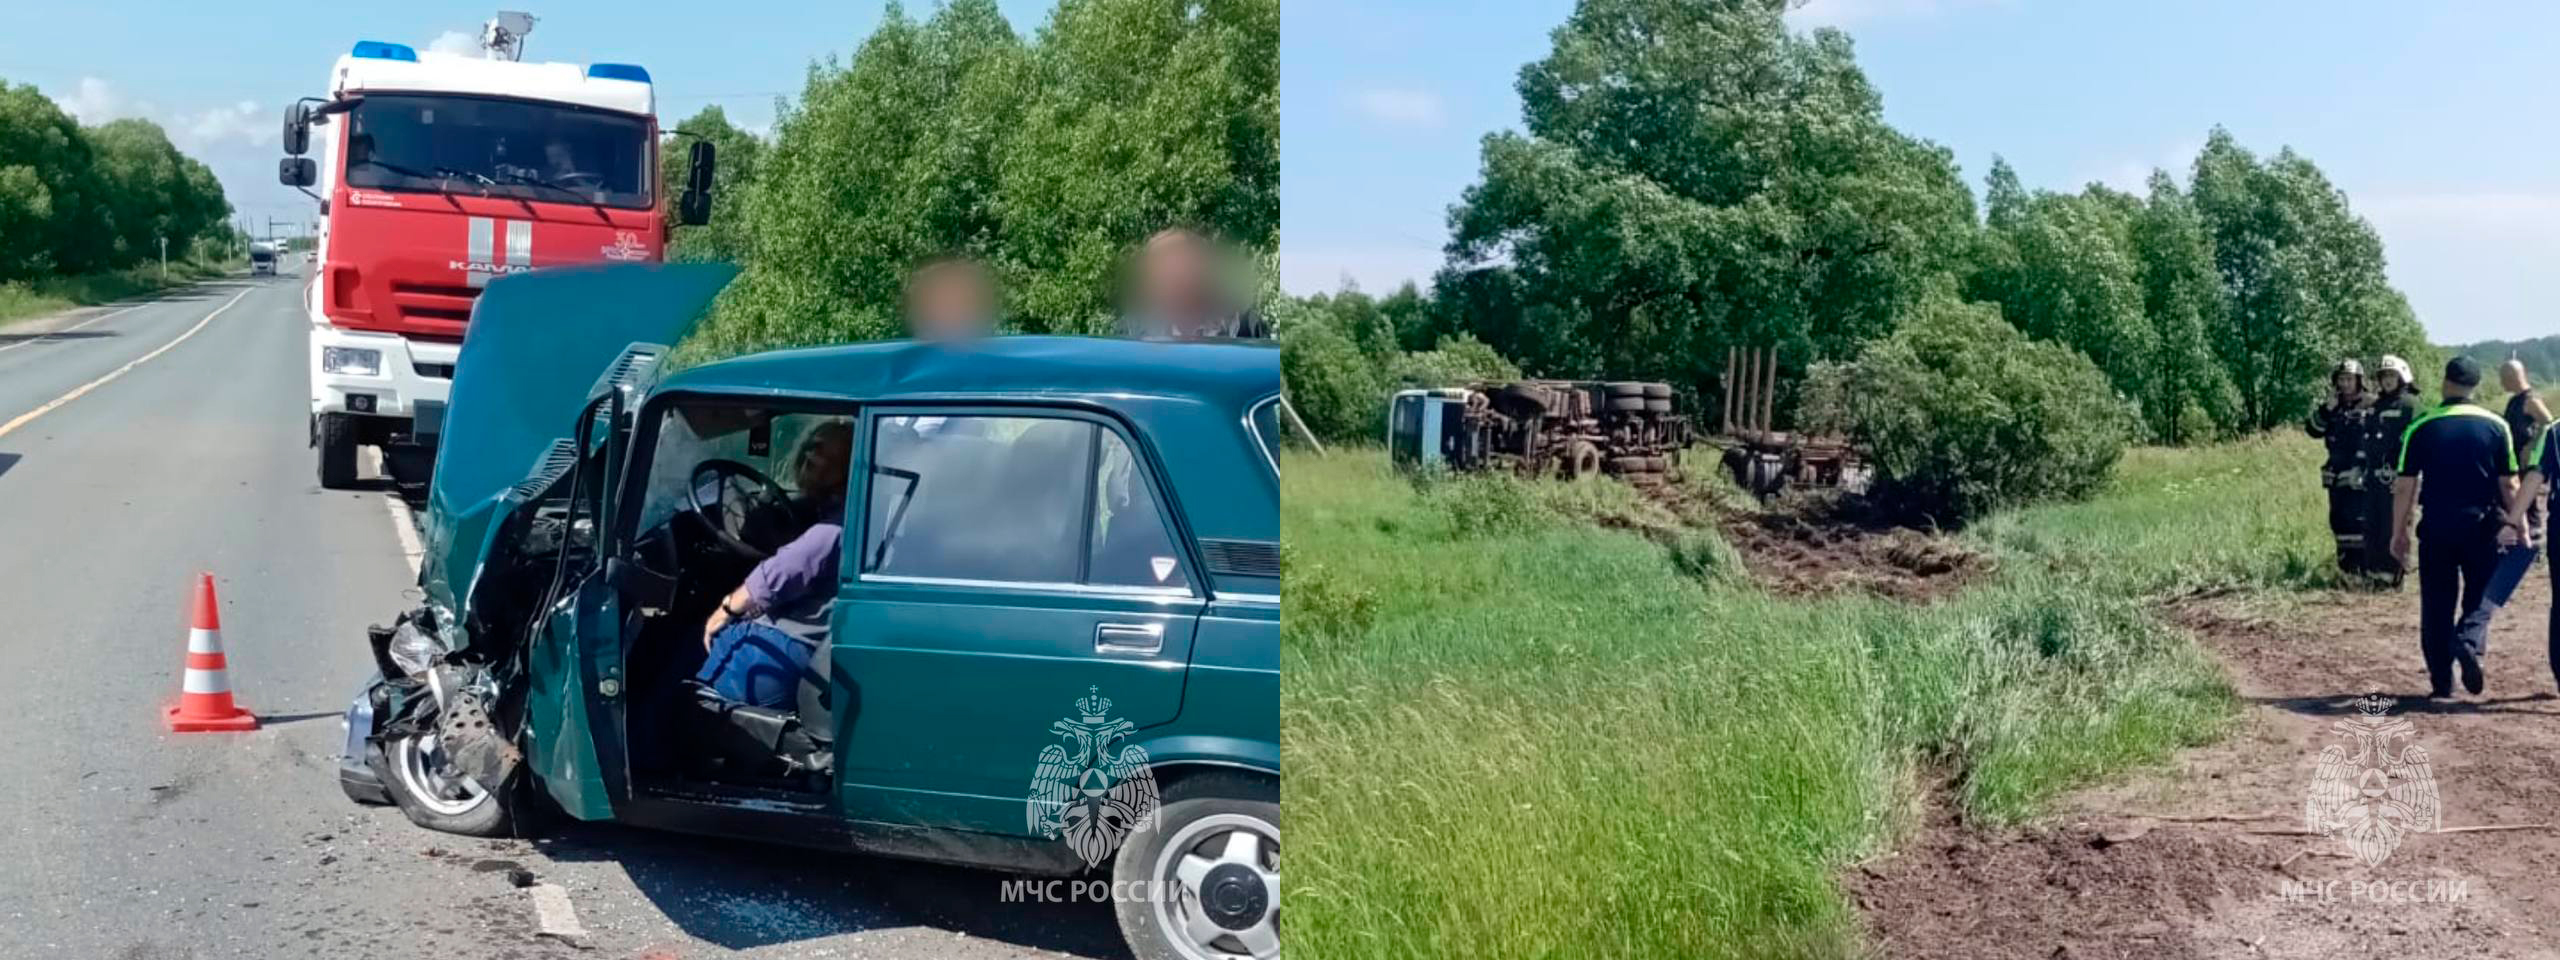 Отечественная легковушка врезалась в грузовик на трассе в Ивановской области